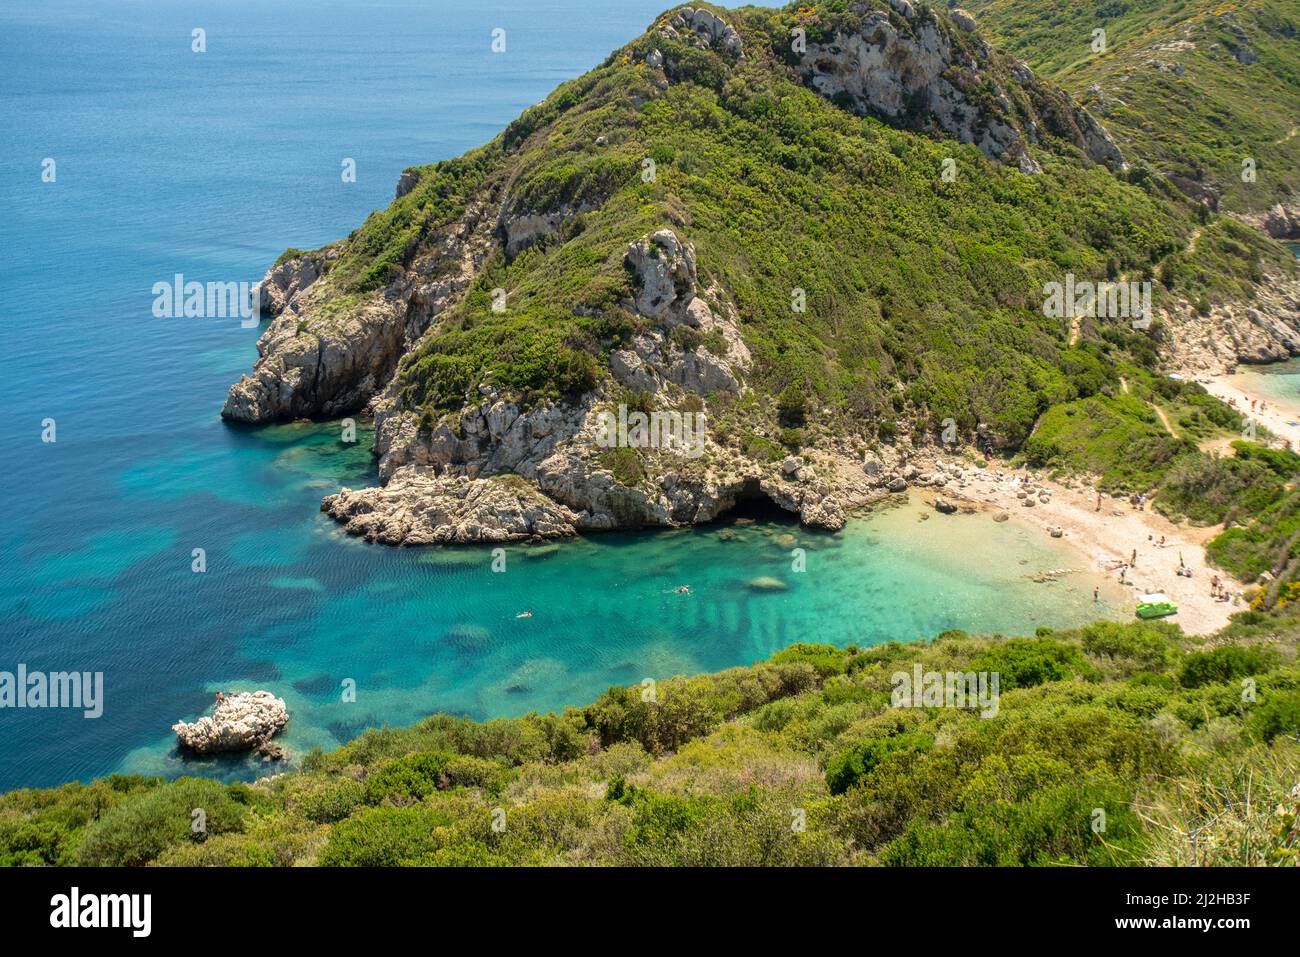 Grèce, île de Corfou, Kerkyra, plage de Porto Timoni et baie turquoise Banque D'Images